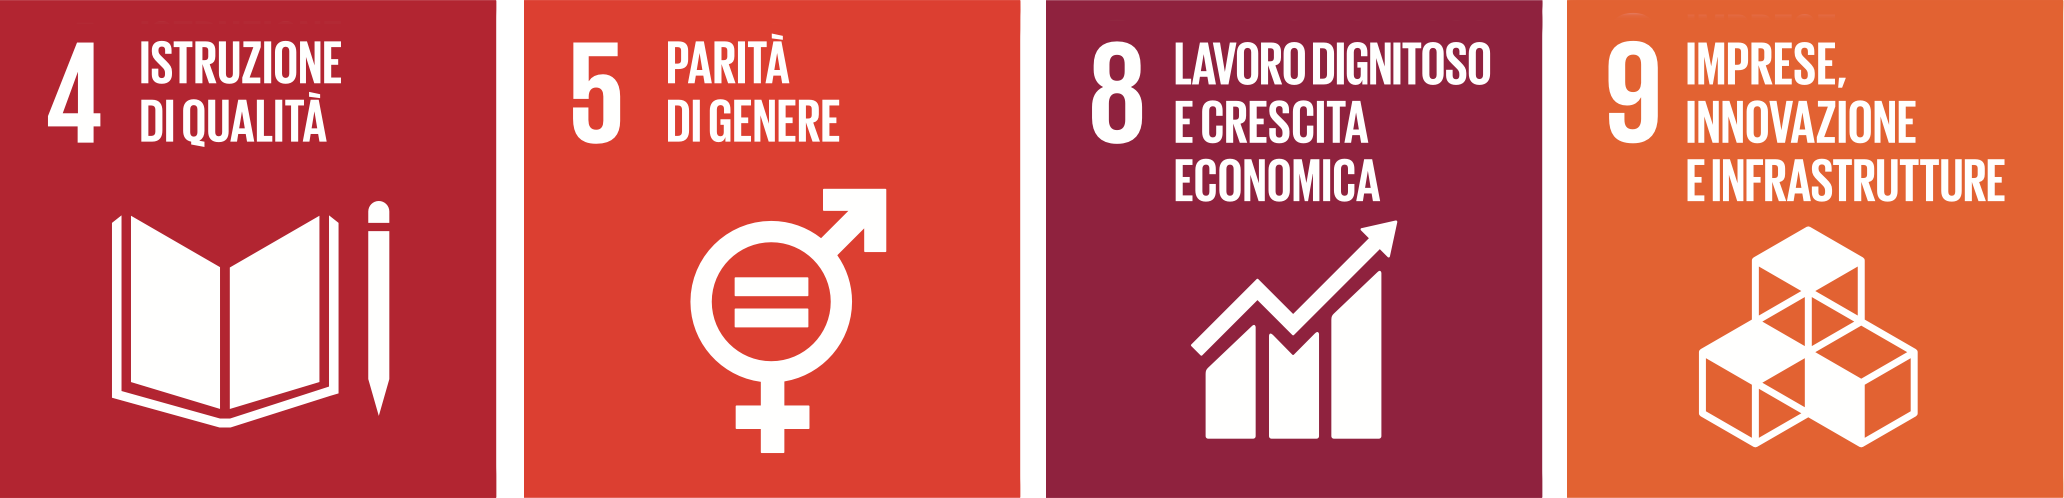 Rappresentazione degli obiettivi per lo Sviluppo Sostenibile dell'Agenda 2030: 4. Istruzione di qualità, 5. Parità di genere, 8. Lavoro dignitoso e crescita economica, 9. Imprese, innovazione e infrastrutture.